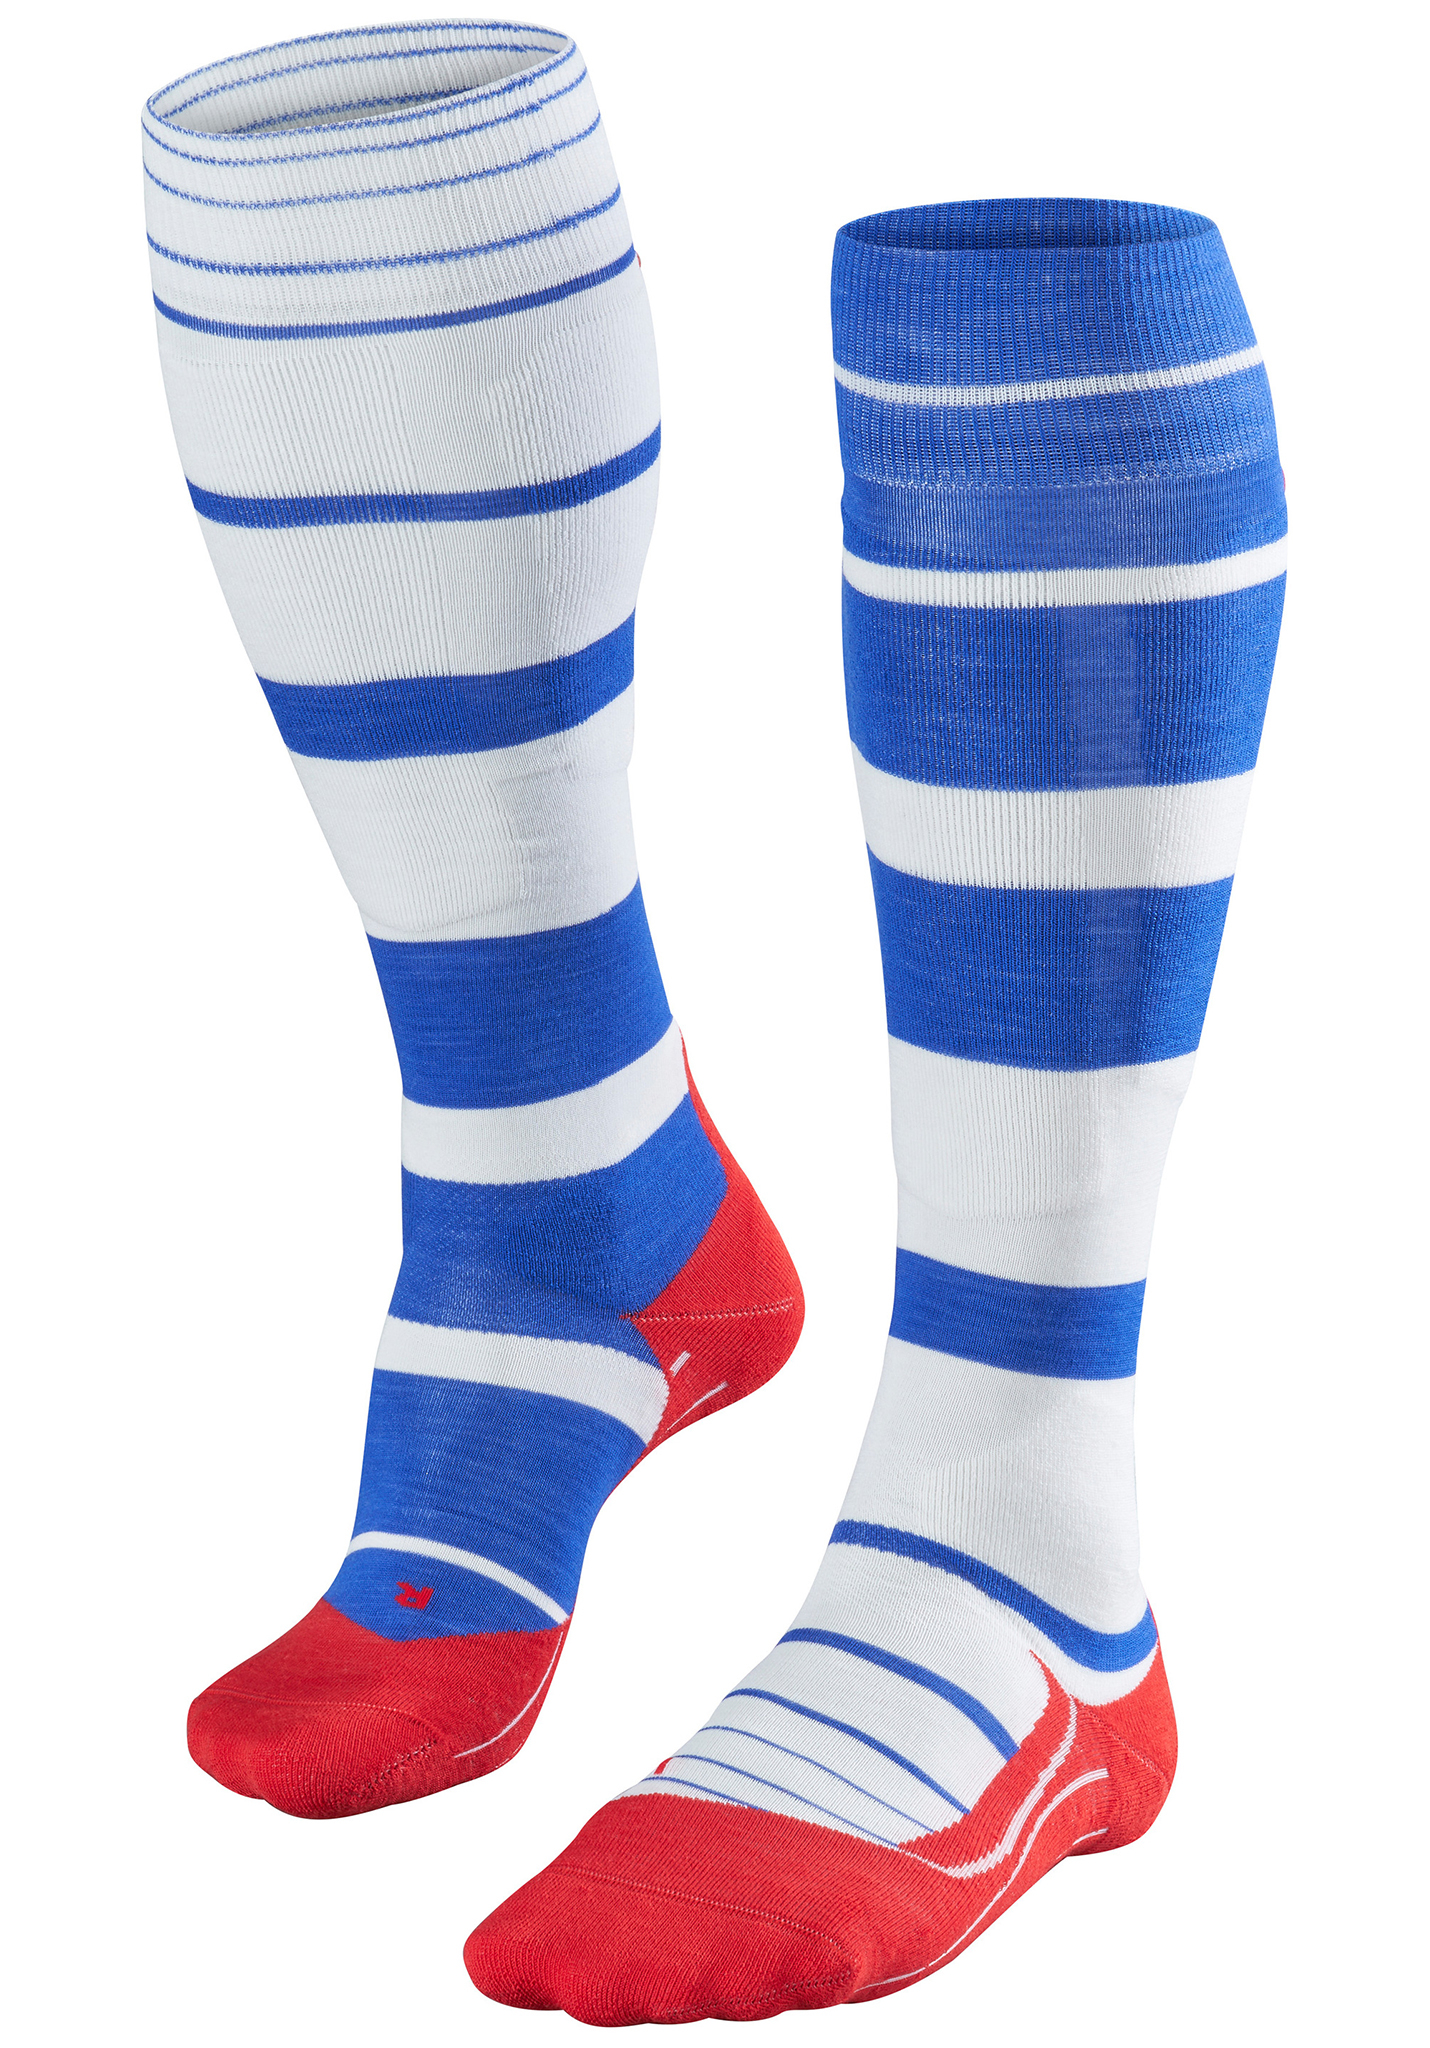 Falke SK 4 Trend Lange Socken rot weiß blau 39-40